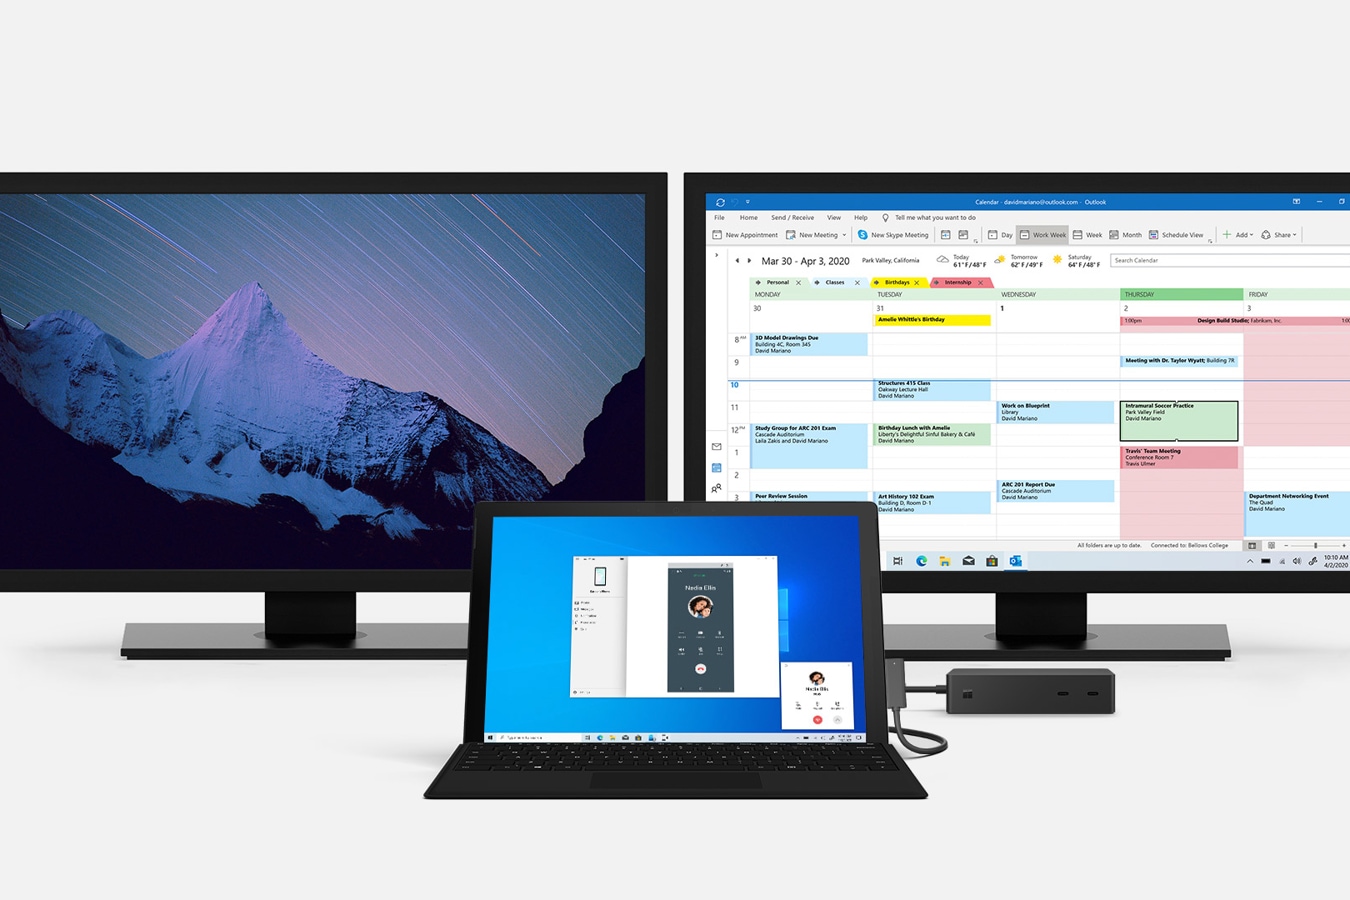 Komputer Surface Pro 7 i stacja dokująca Surface 2 podłączone do wielu dużych monitorów